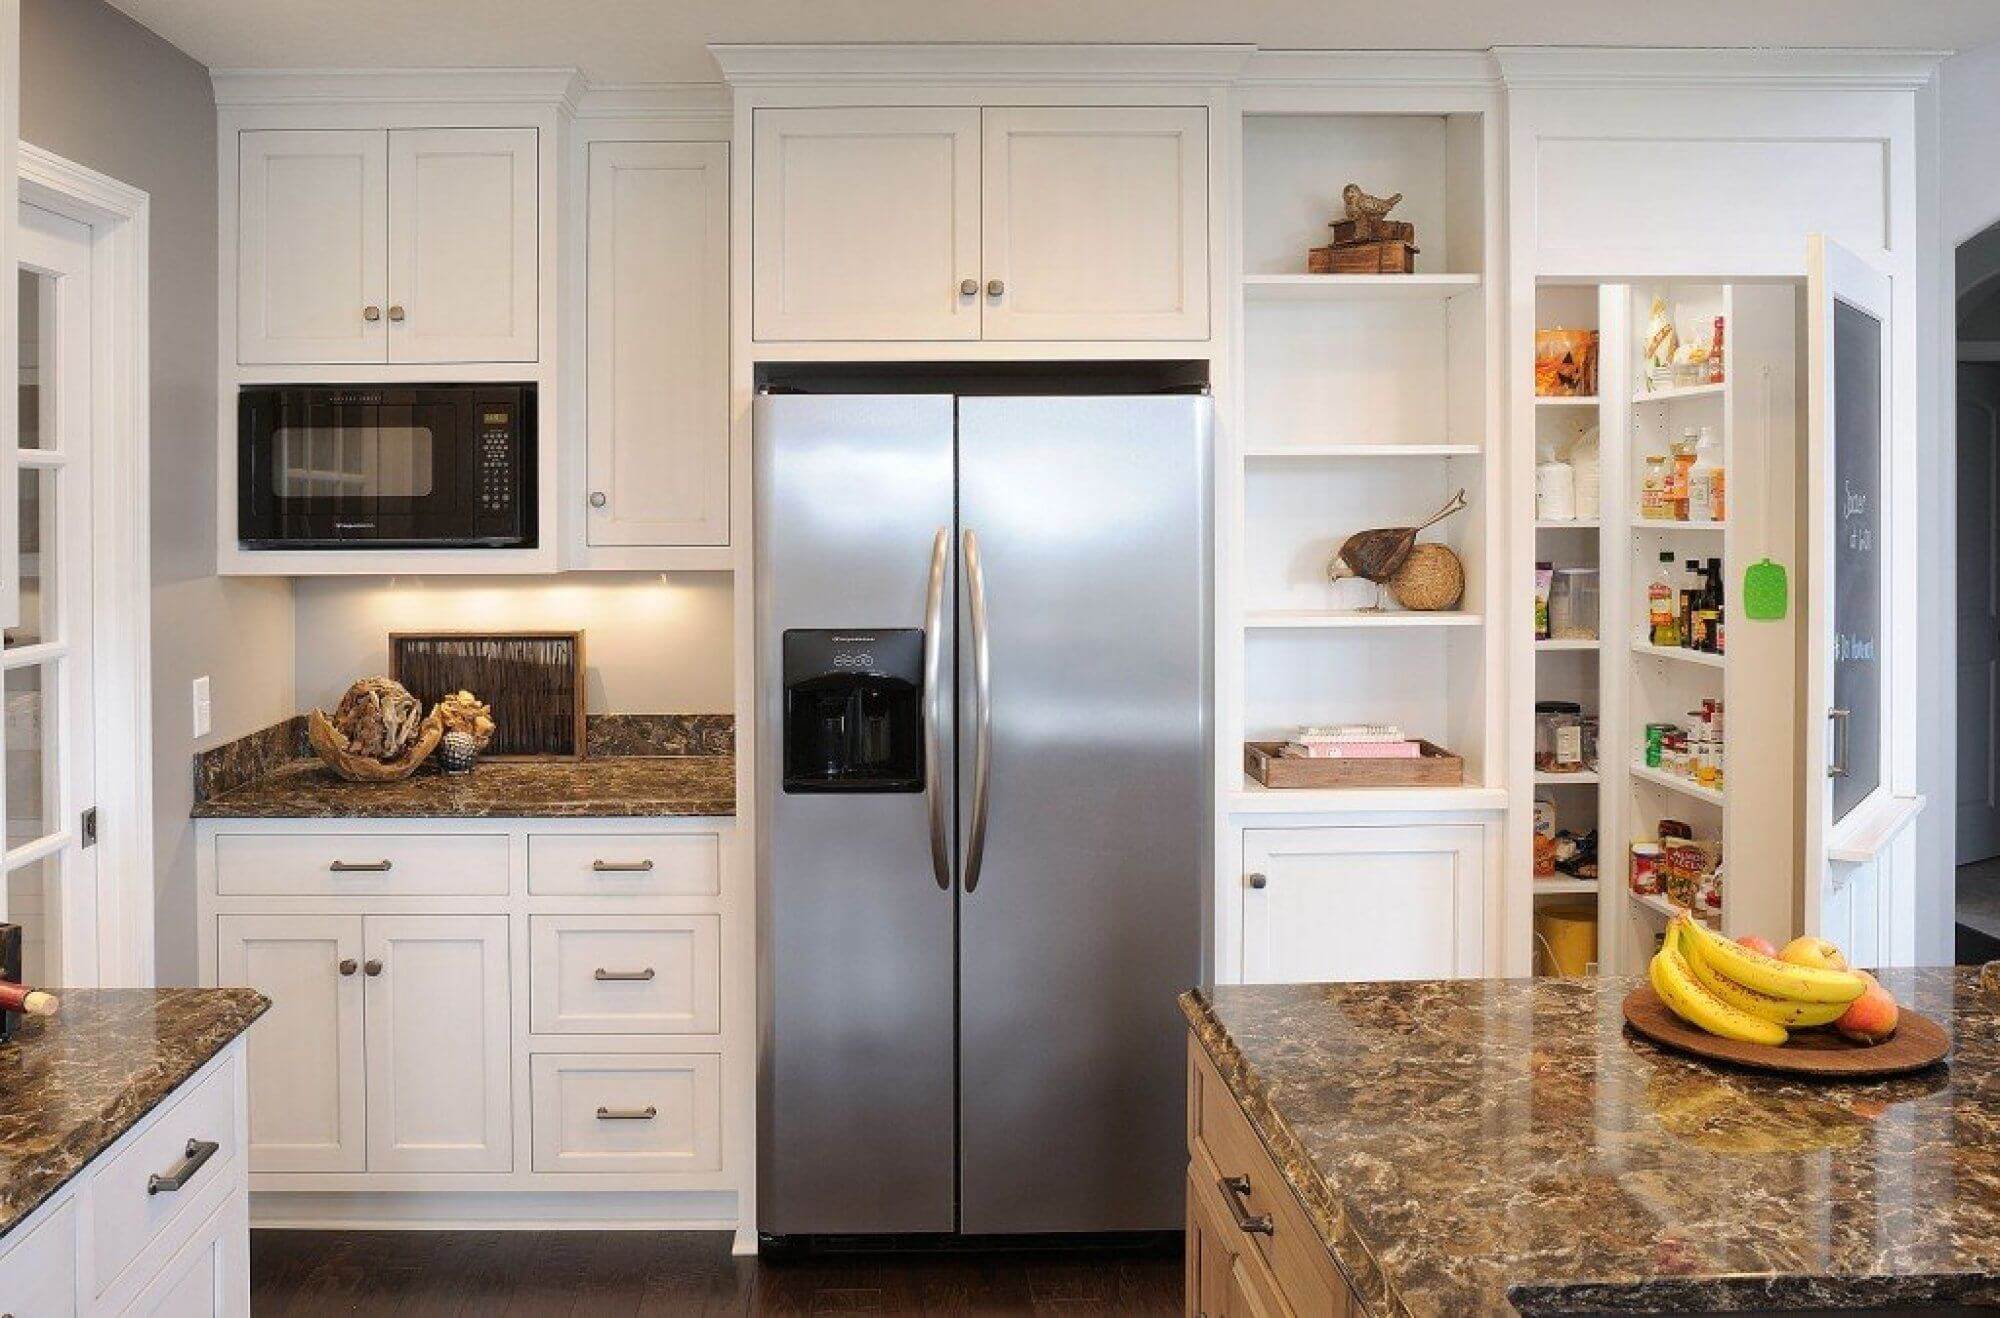 Холодильник на кухне (100 реальные фото): идеи планировки, зонирования и дизайна кухни с холодильником